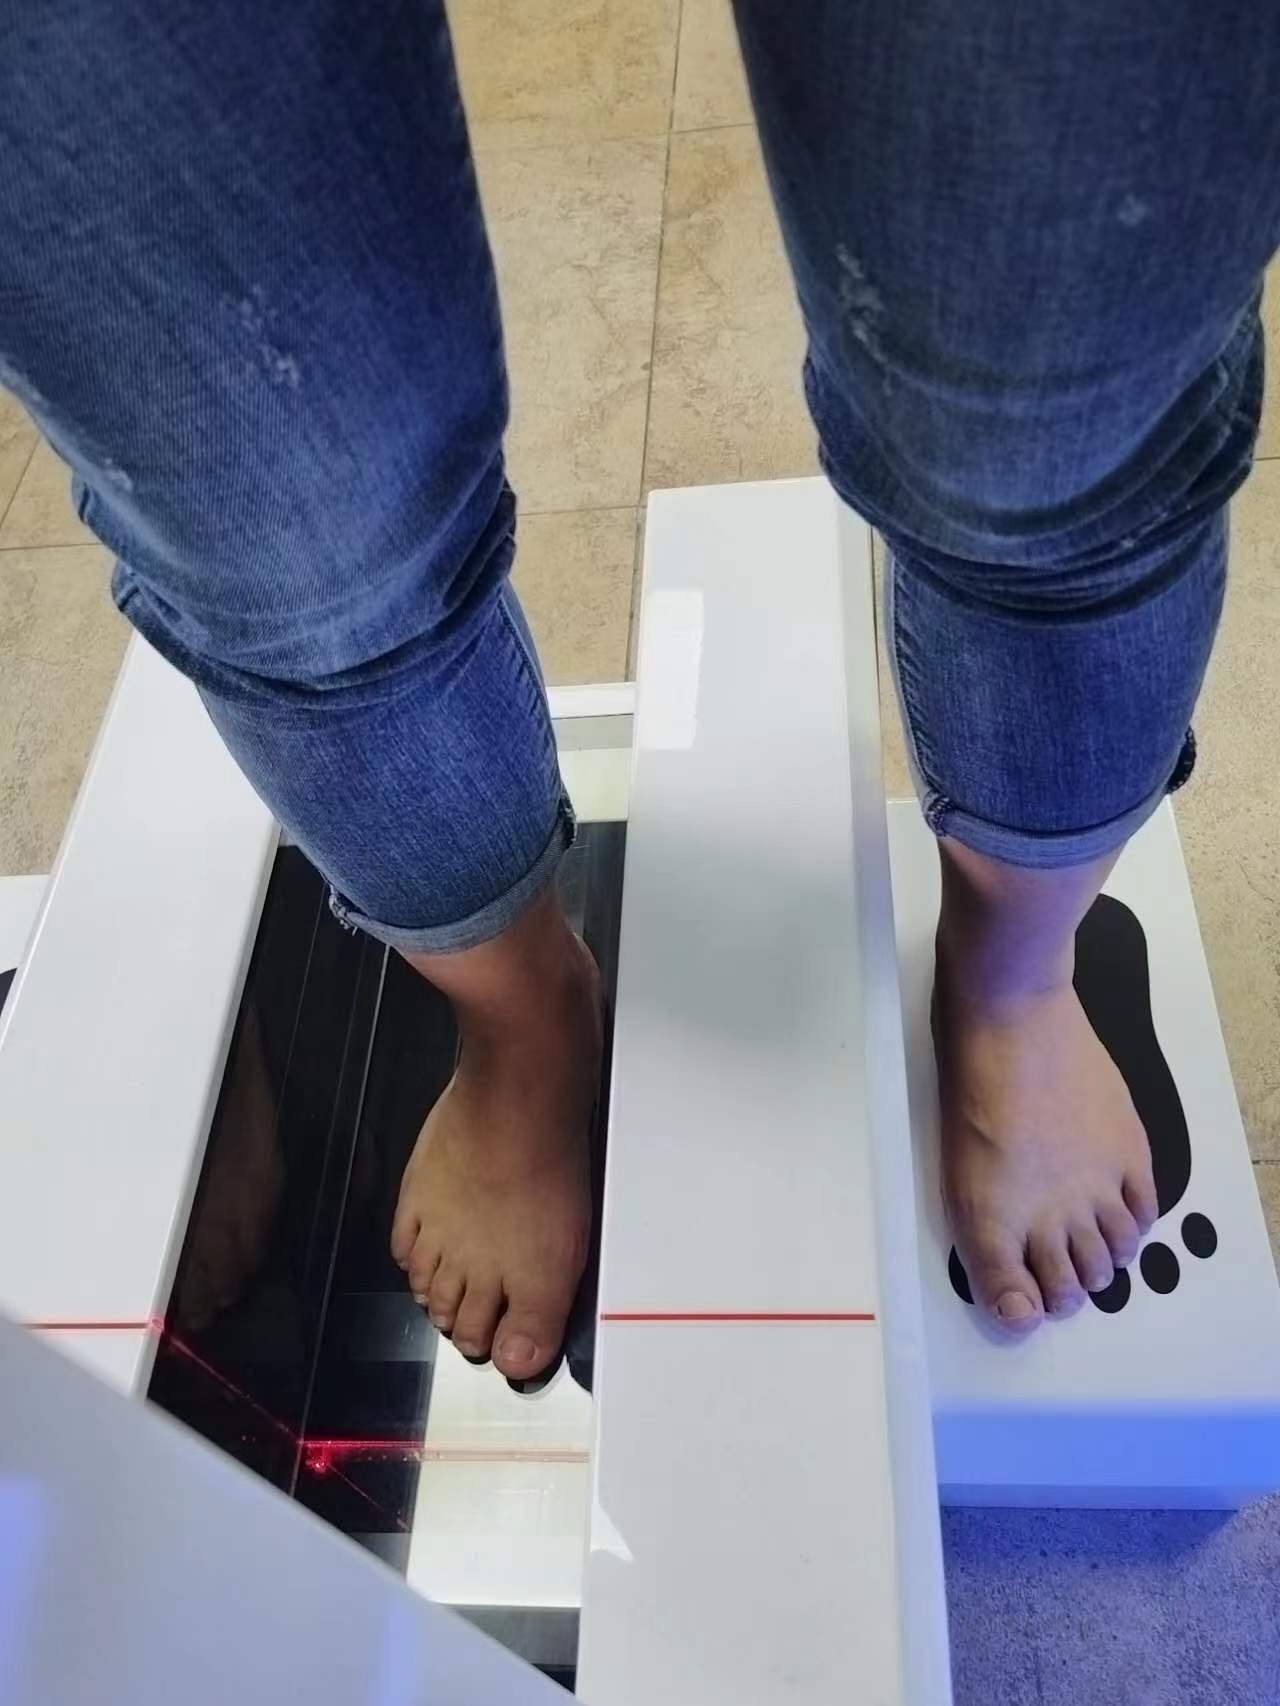 3D激光足底掃描儀在足部健康等領域的應用及原理